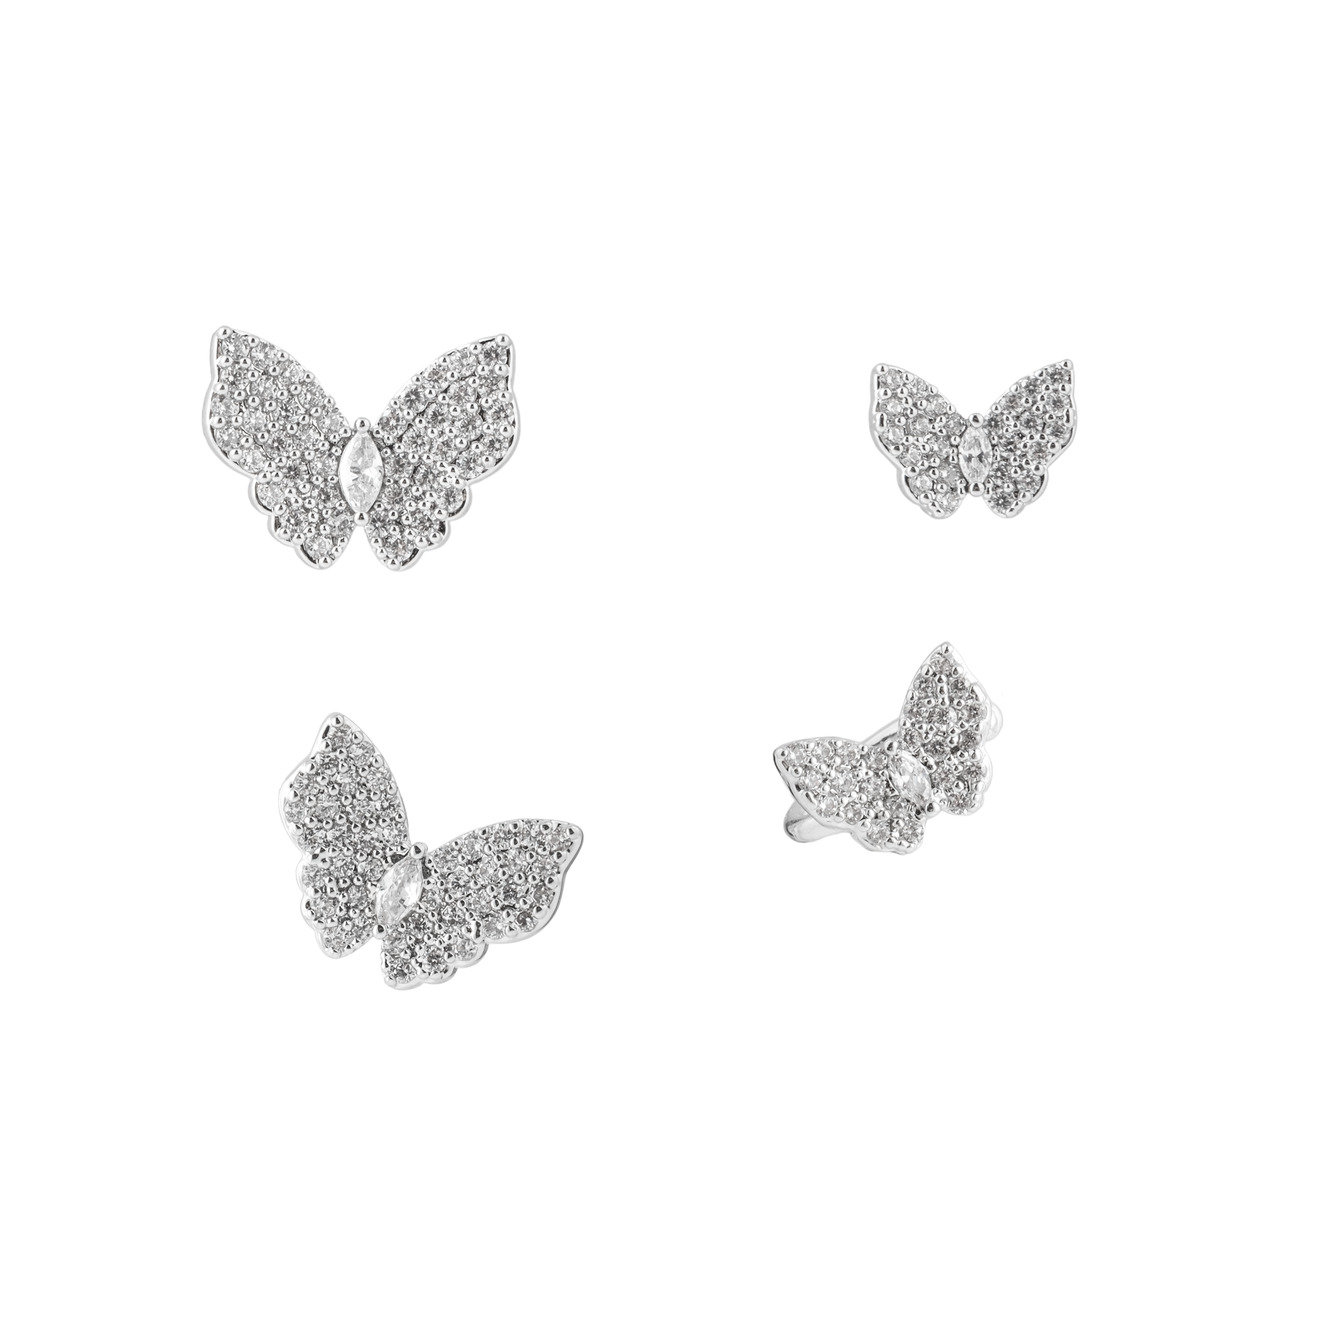 Herald Percy Серебристый сет серег и каффов с бабочками herald percy сет золотистых колец с шариками и кристаллами